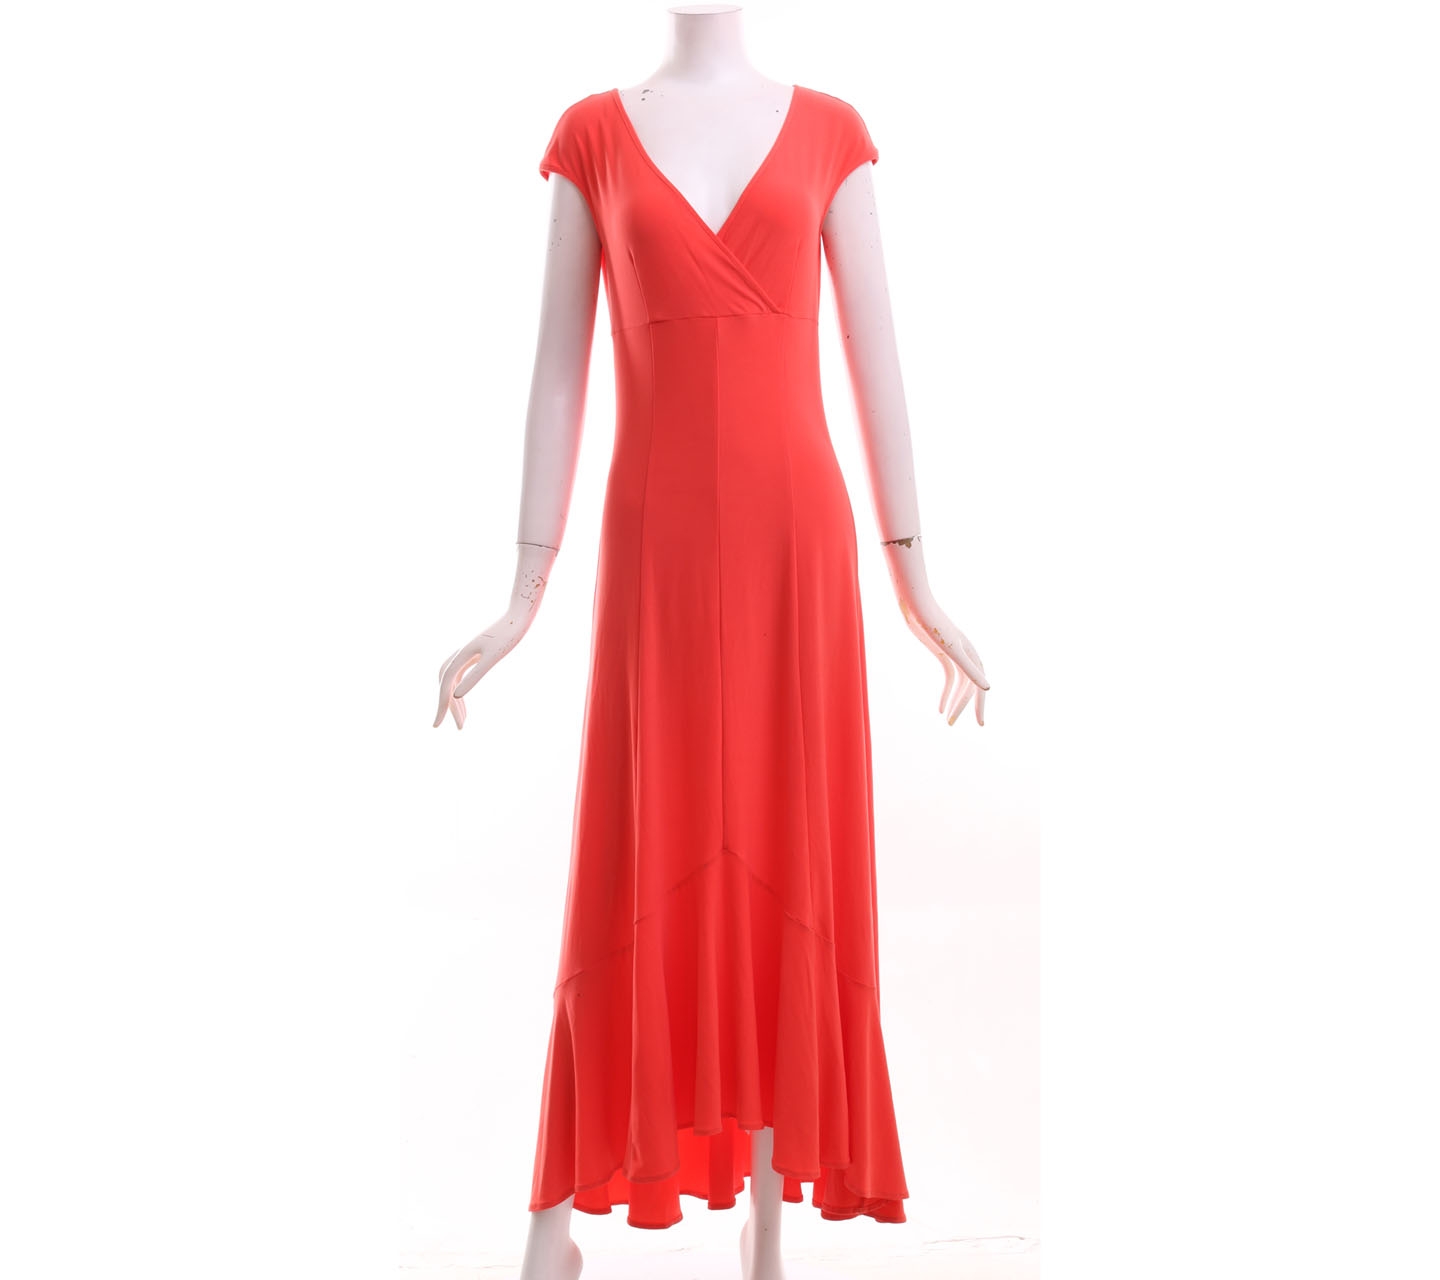 Farah Khan Peach Long Dress